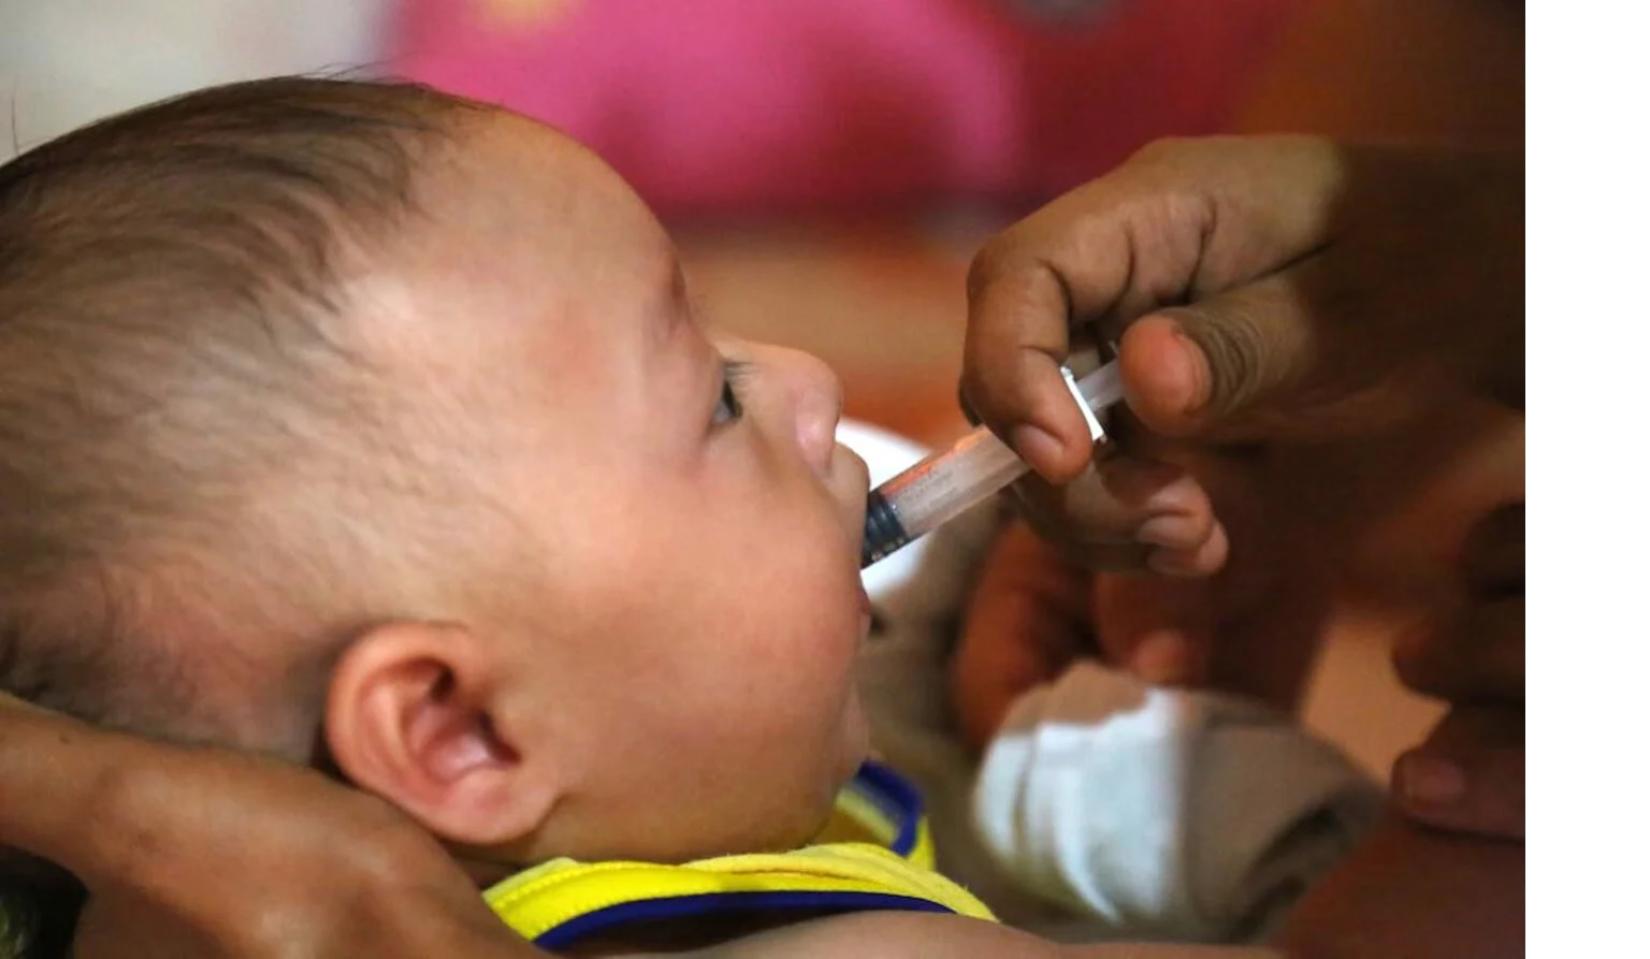 Autoridades de saúde se comprometem a intensificar esforços para manter a região das Américas livre da poliomielite.